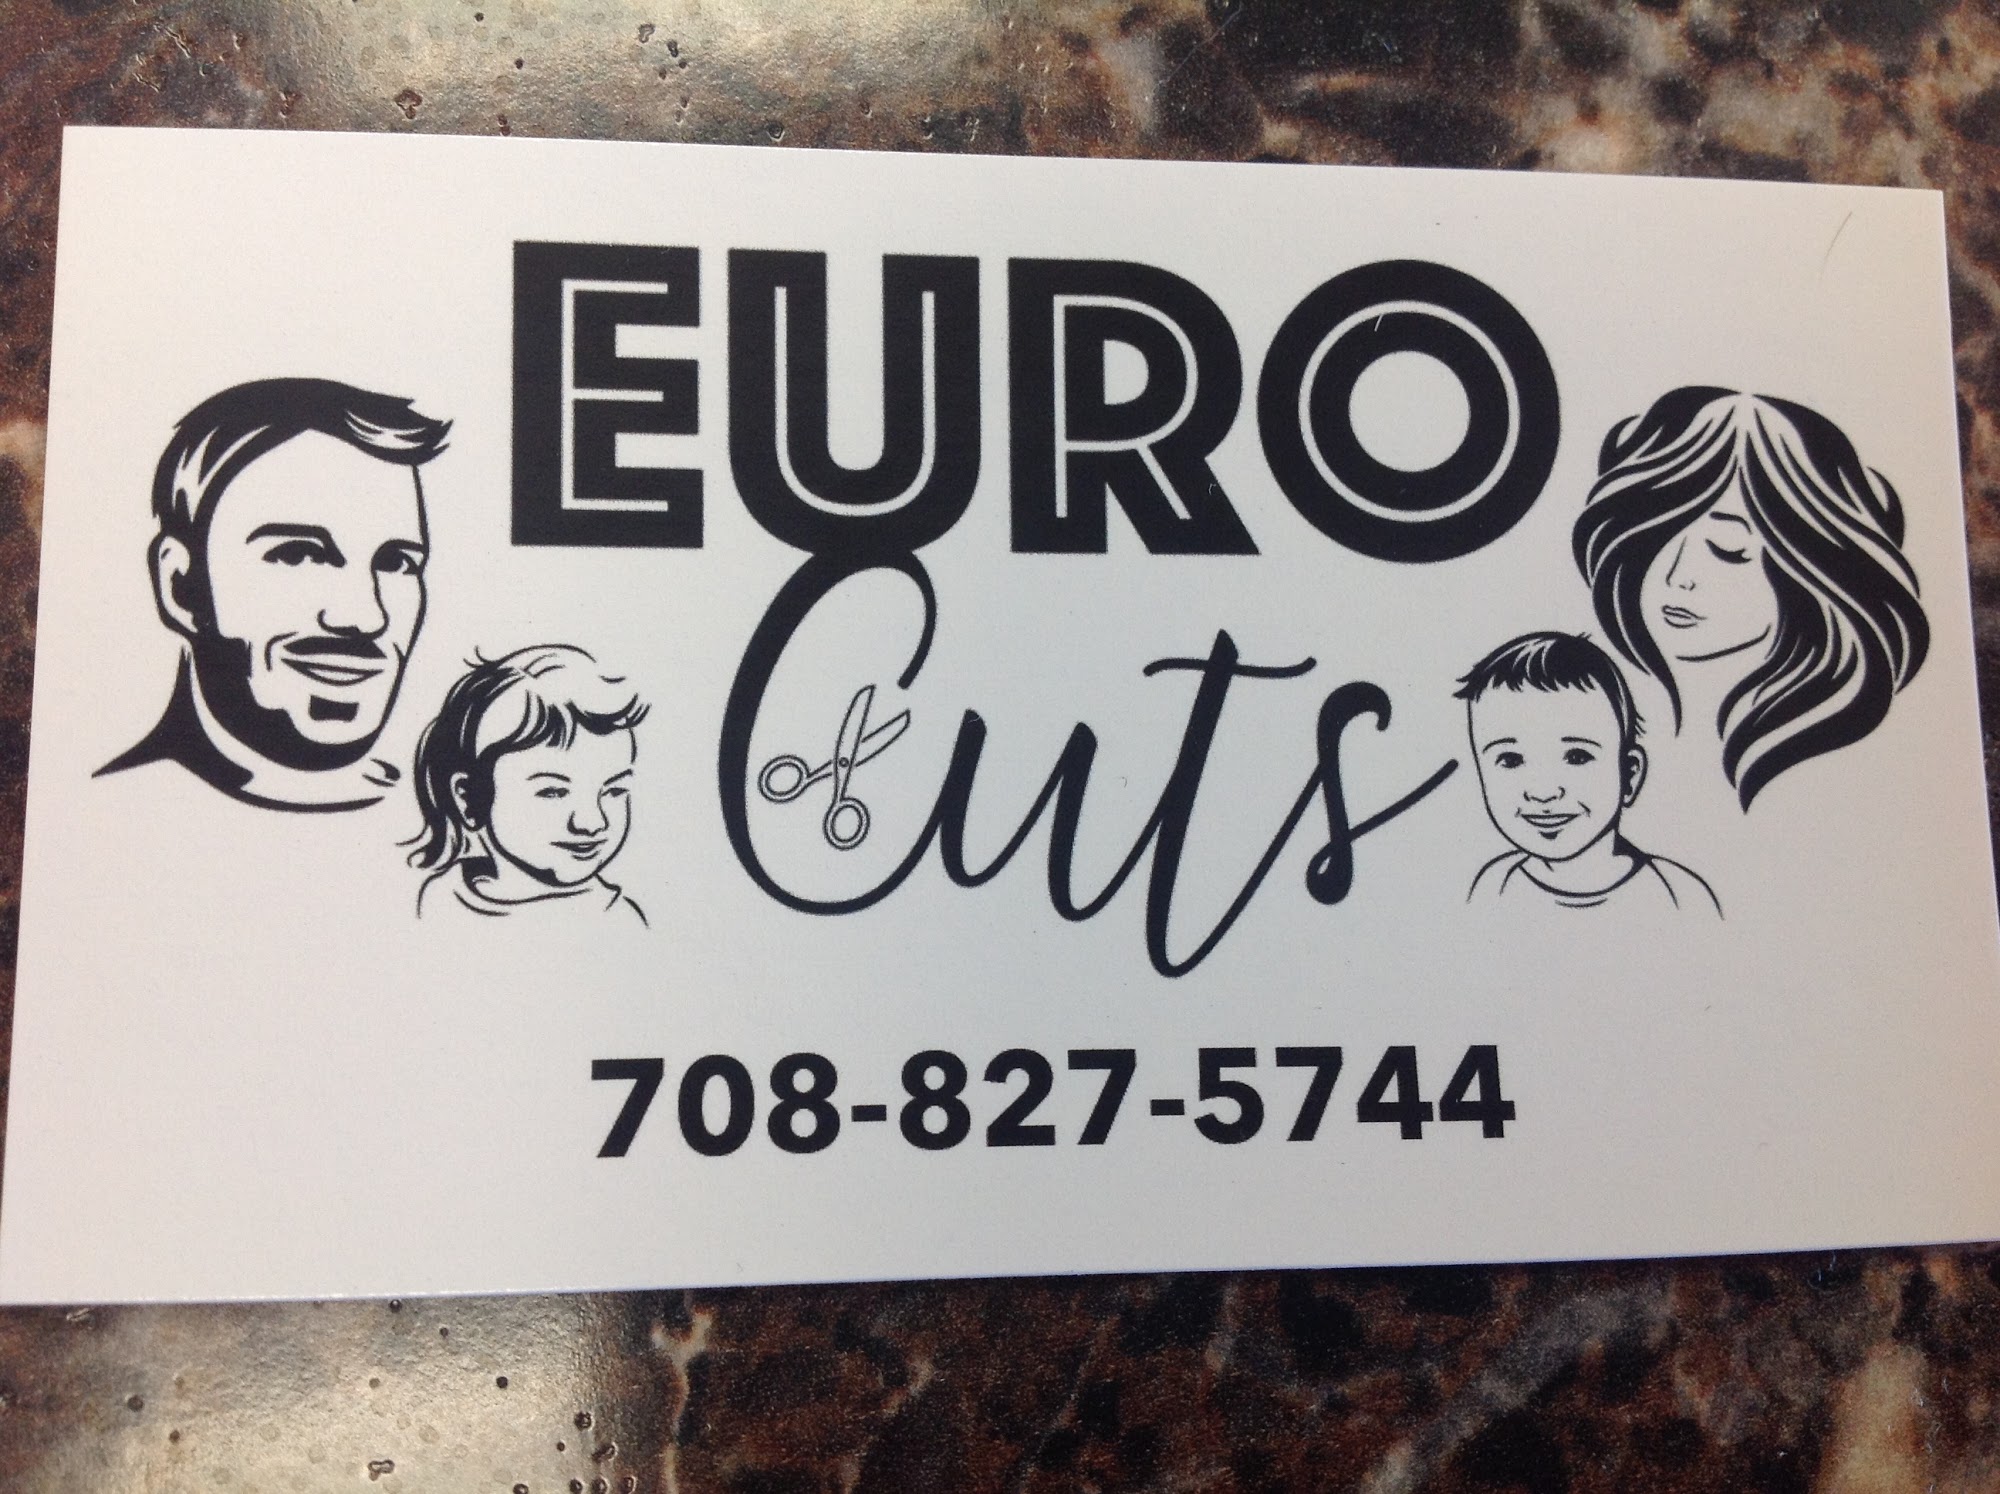 Euro Cuts